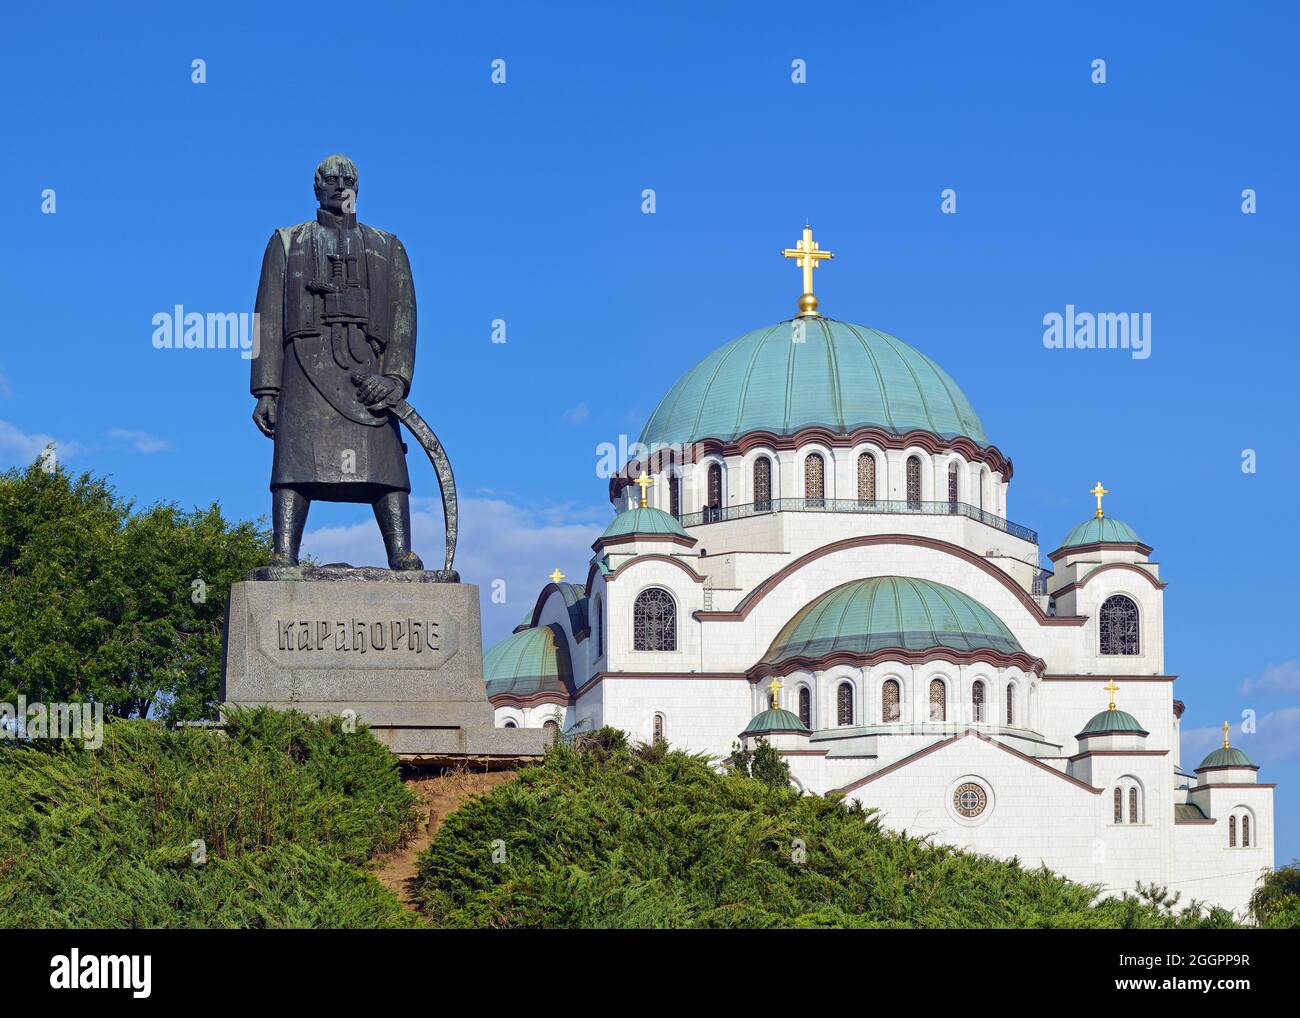 Monumento Karadjordje con la Iglesia de San Sava en el fondo, Parque Karadjordjev, Belgrado, Serbia Foto de stock